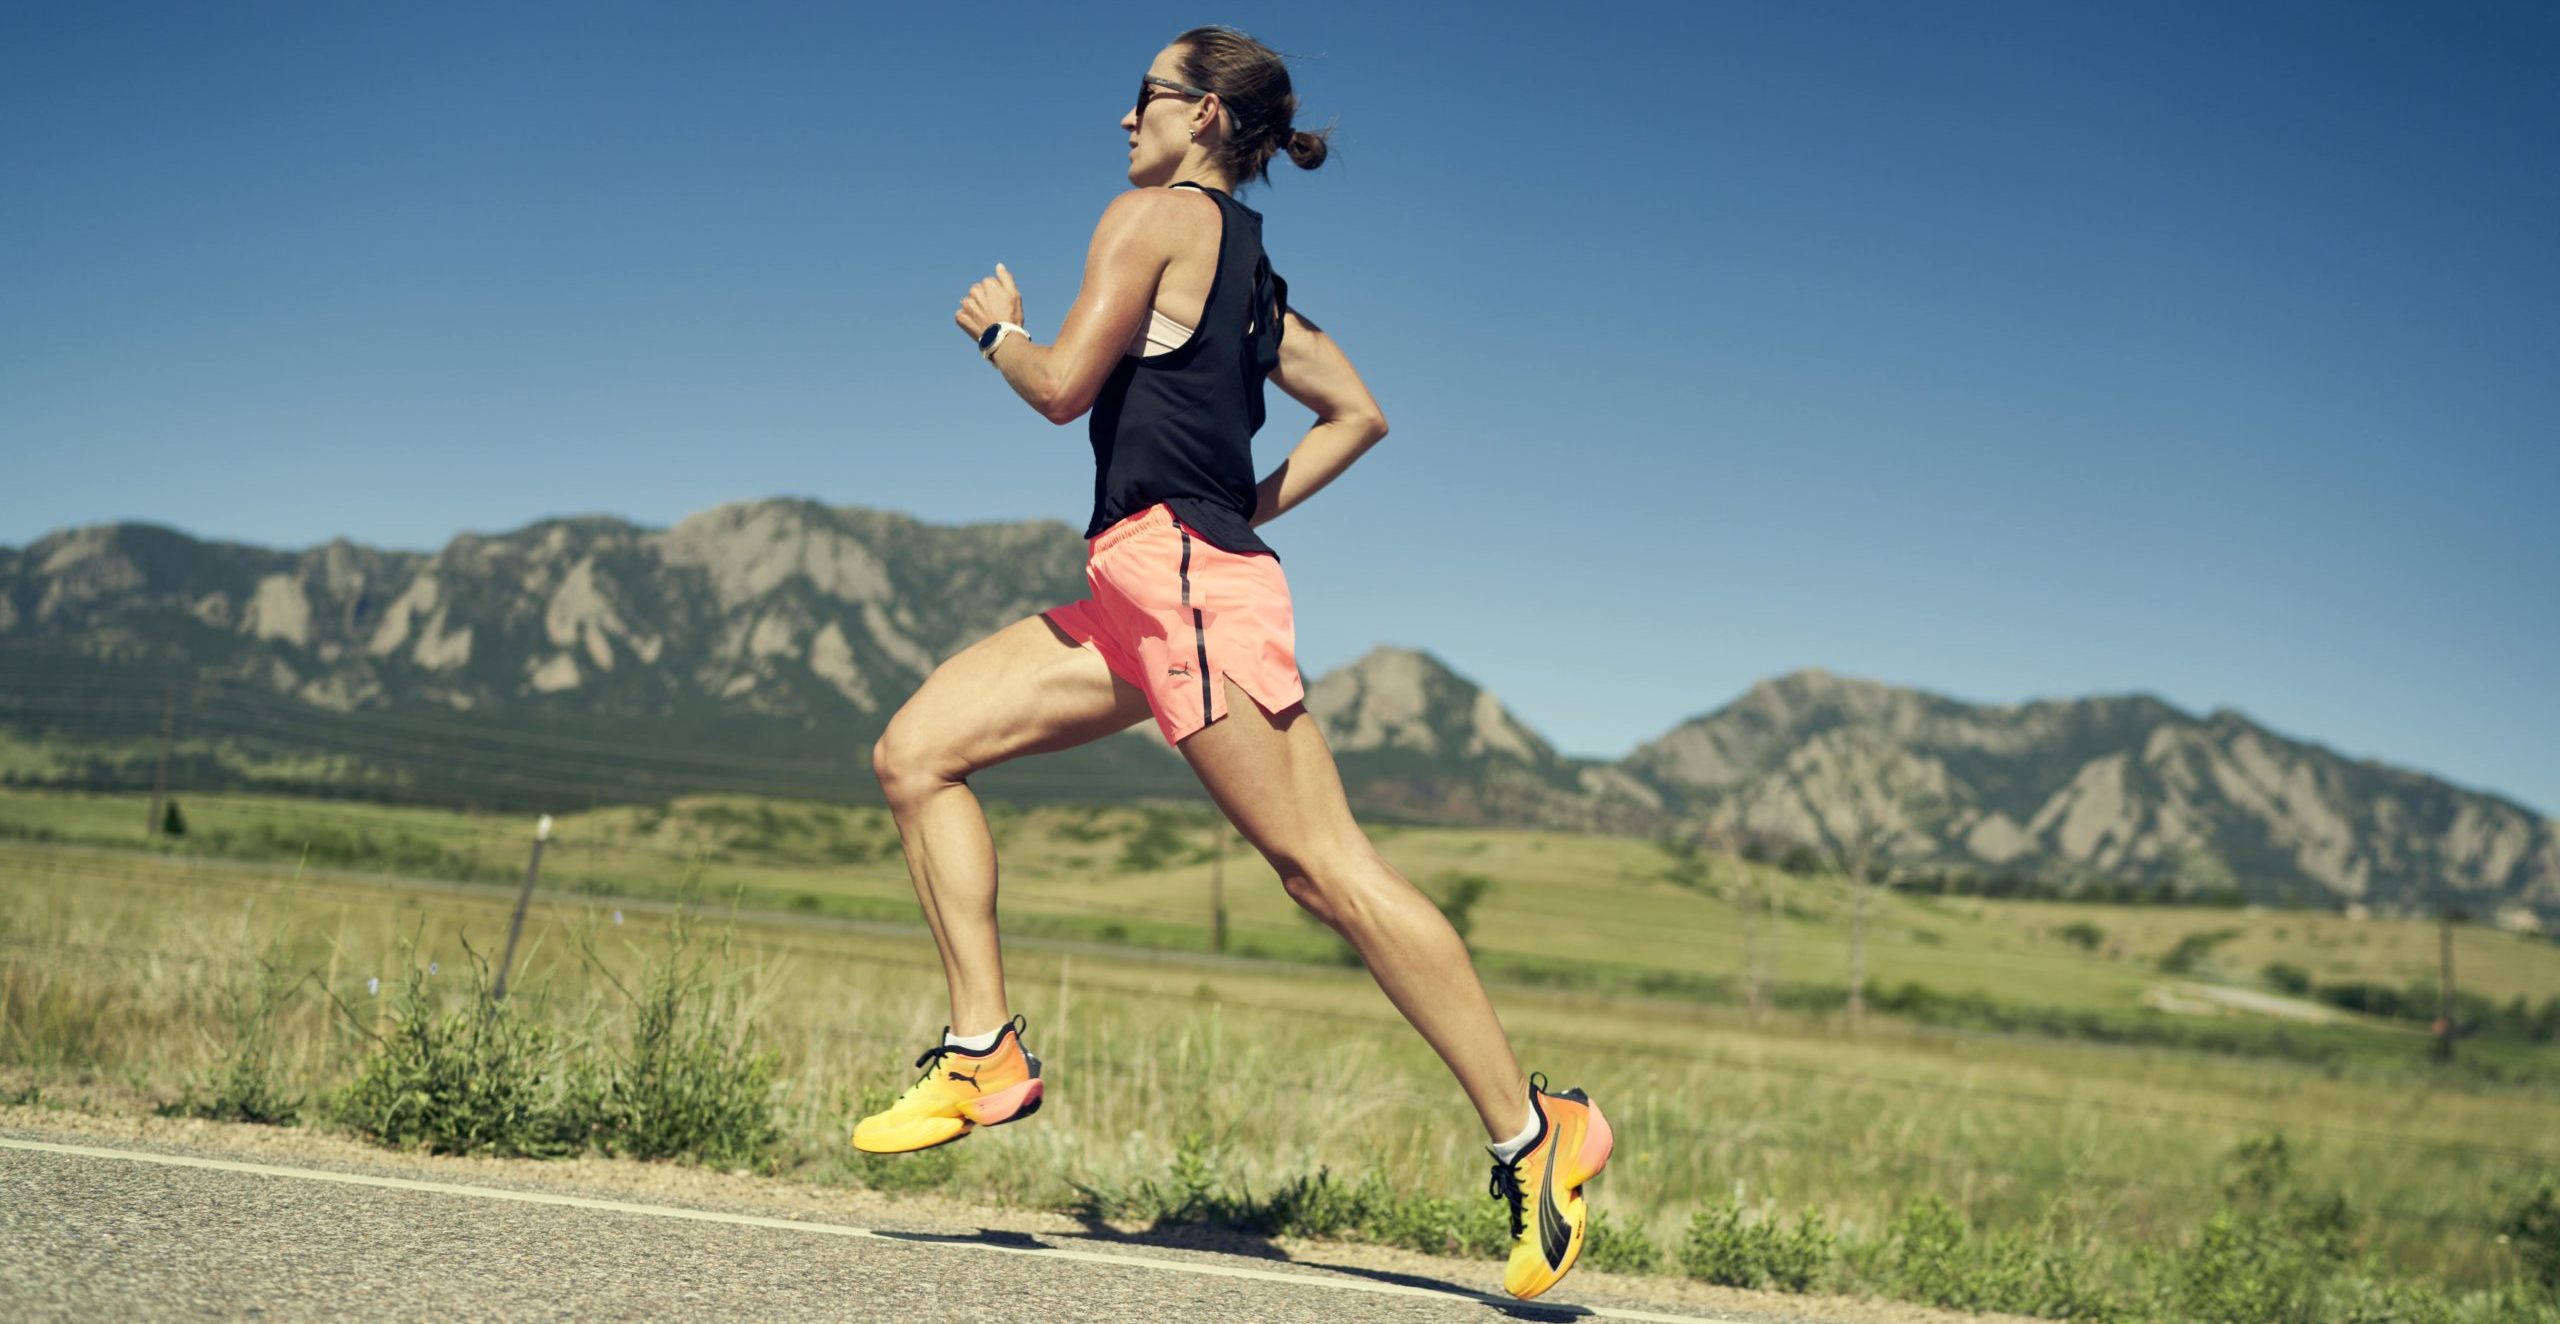 Femme en tenue de running PUMA court dans une région montagneuse